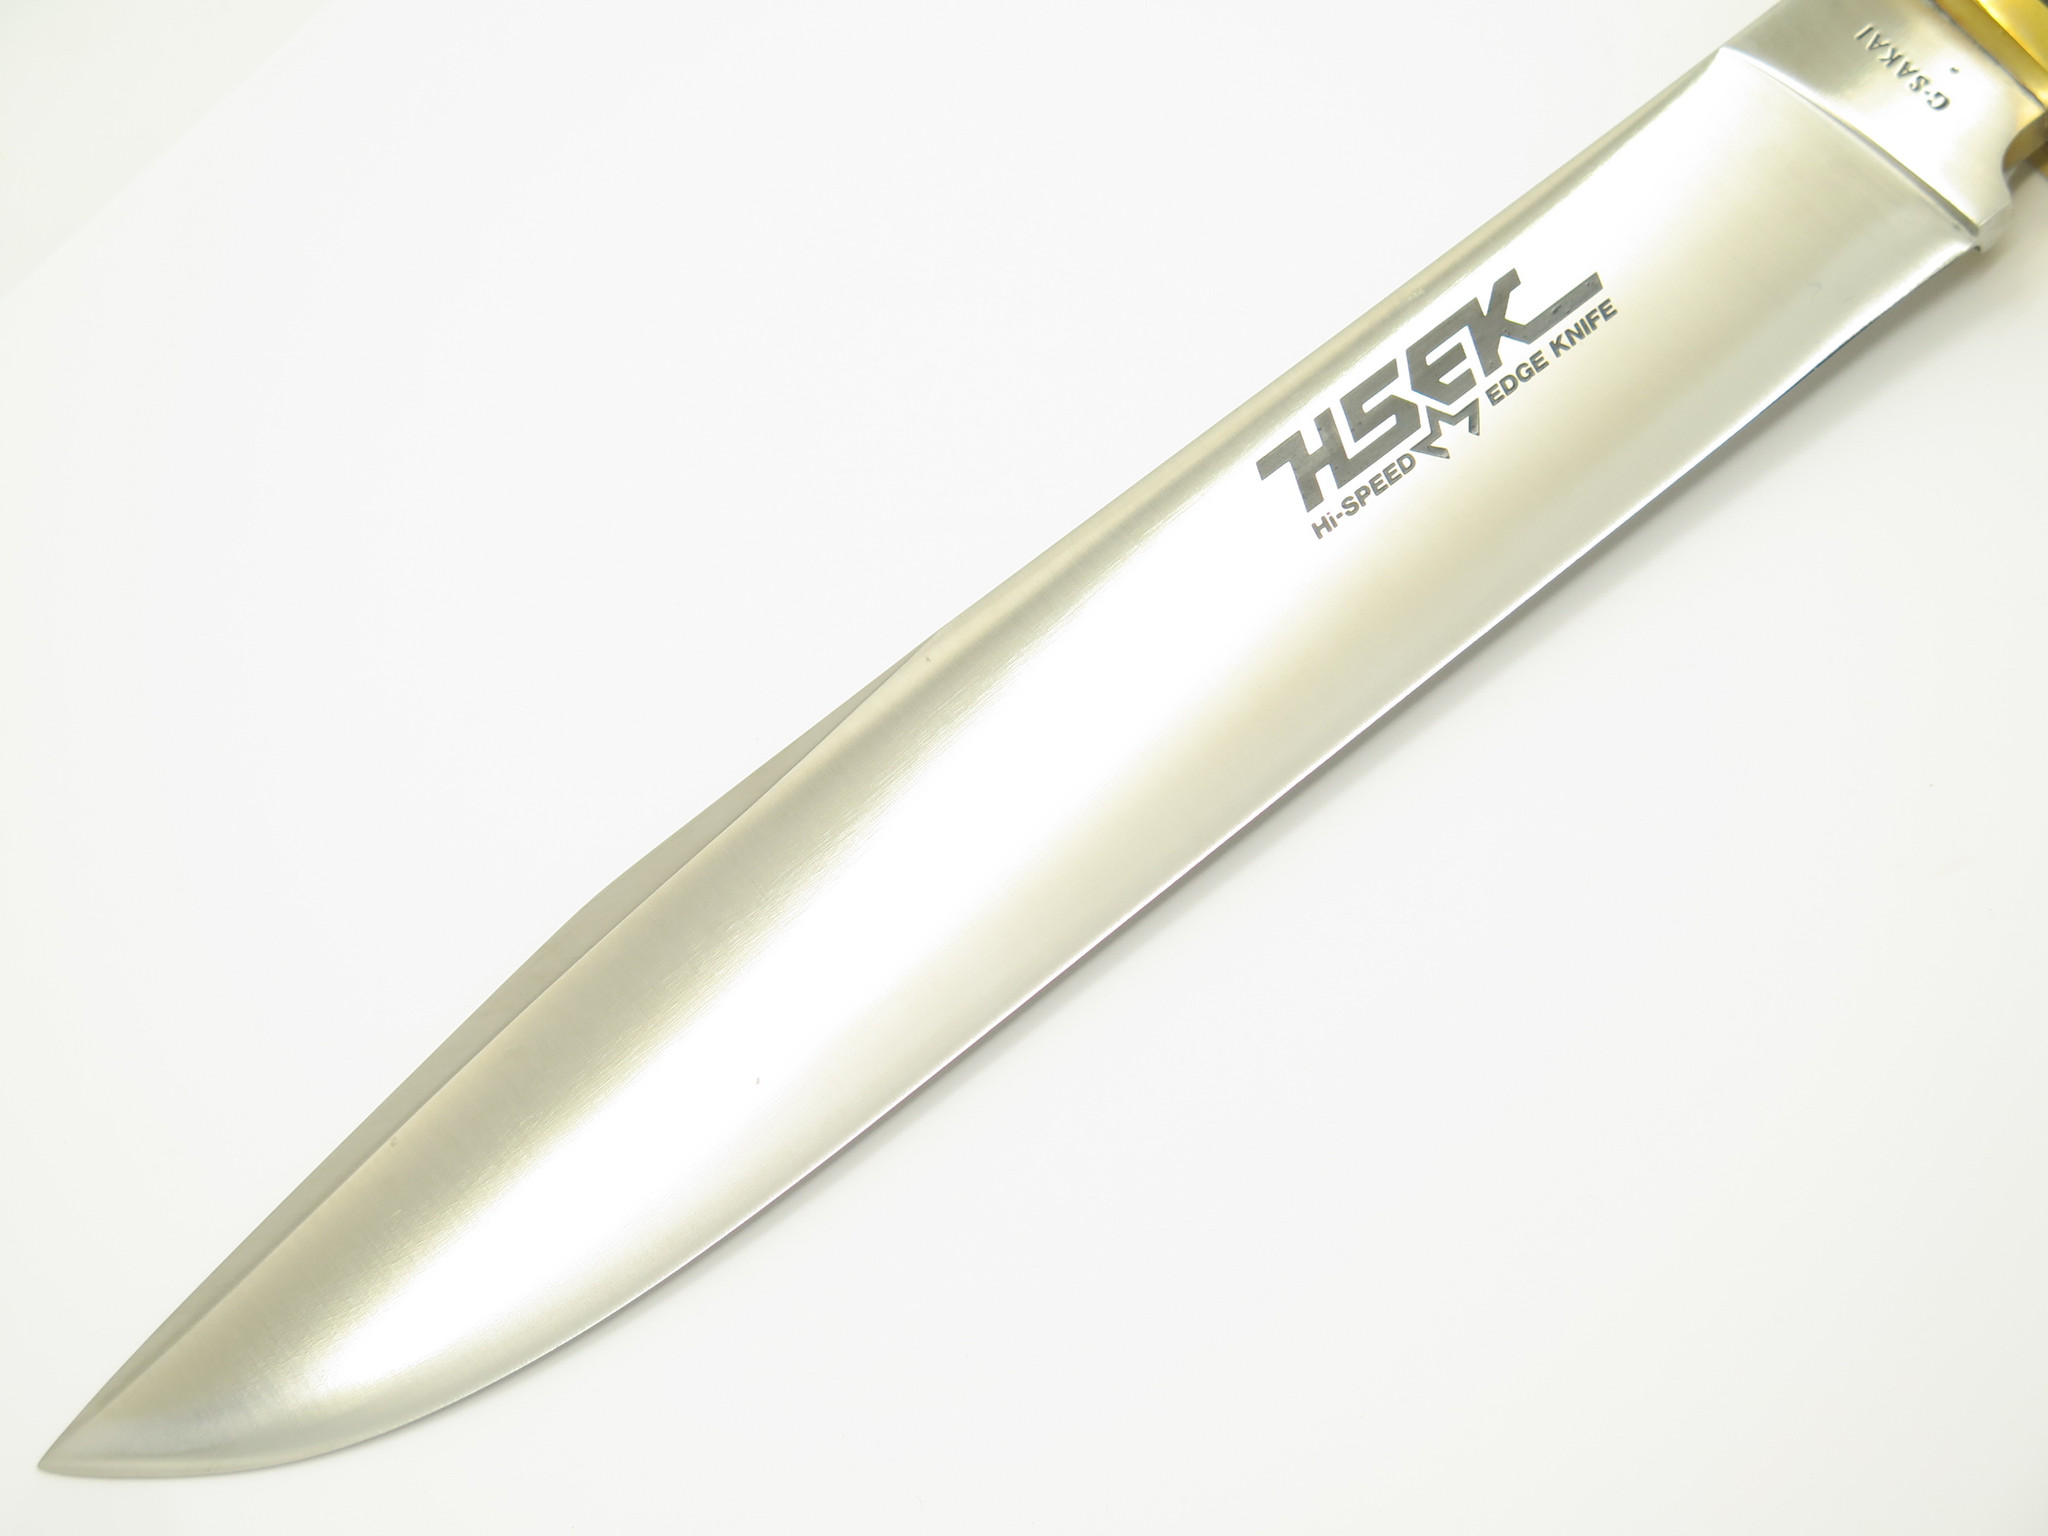 Vtg Custom G Sakai HSEK Hi-Speed Edge Knife Fixed 9.5 Blade 